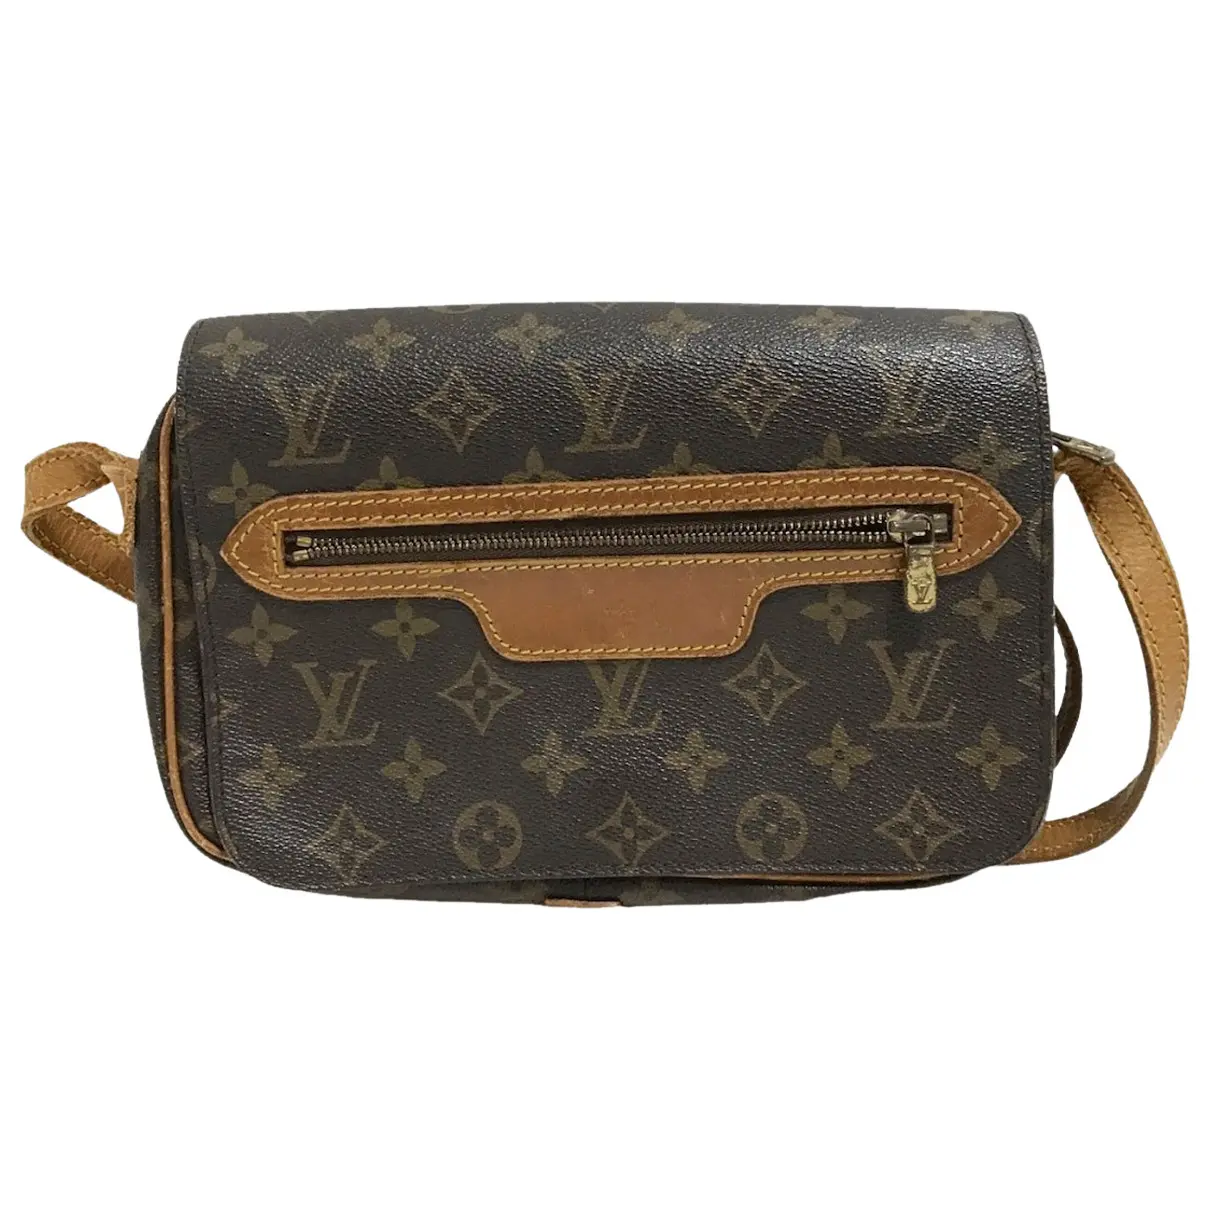 Saint-Germain cloth handbag Louis Vuitton